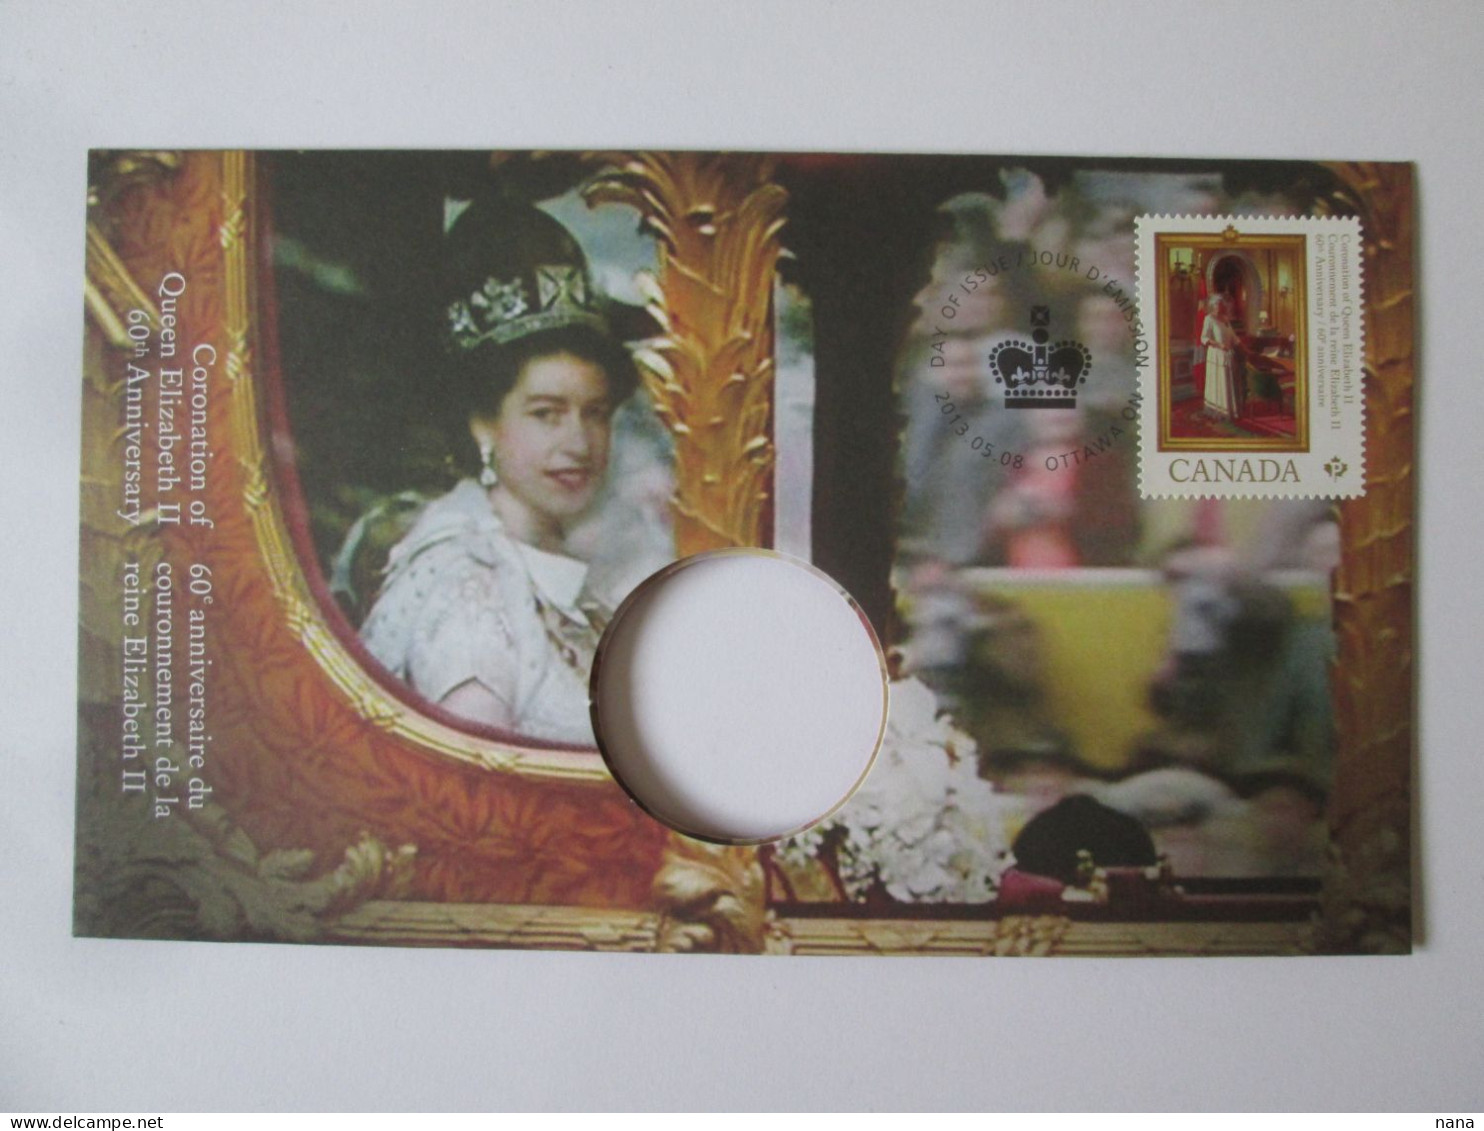 Canada Envel.philatelique Sans Monnaie,reine Elizabeth II,60e Anniv.tirage Limite A 10000/Philat.cover Without Coin2013 - Briefe U. Dokumente